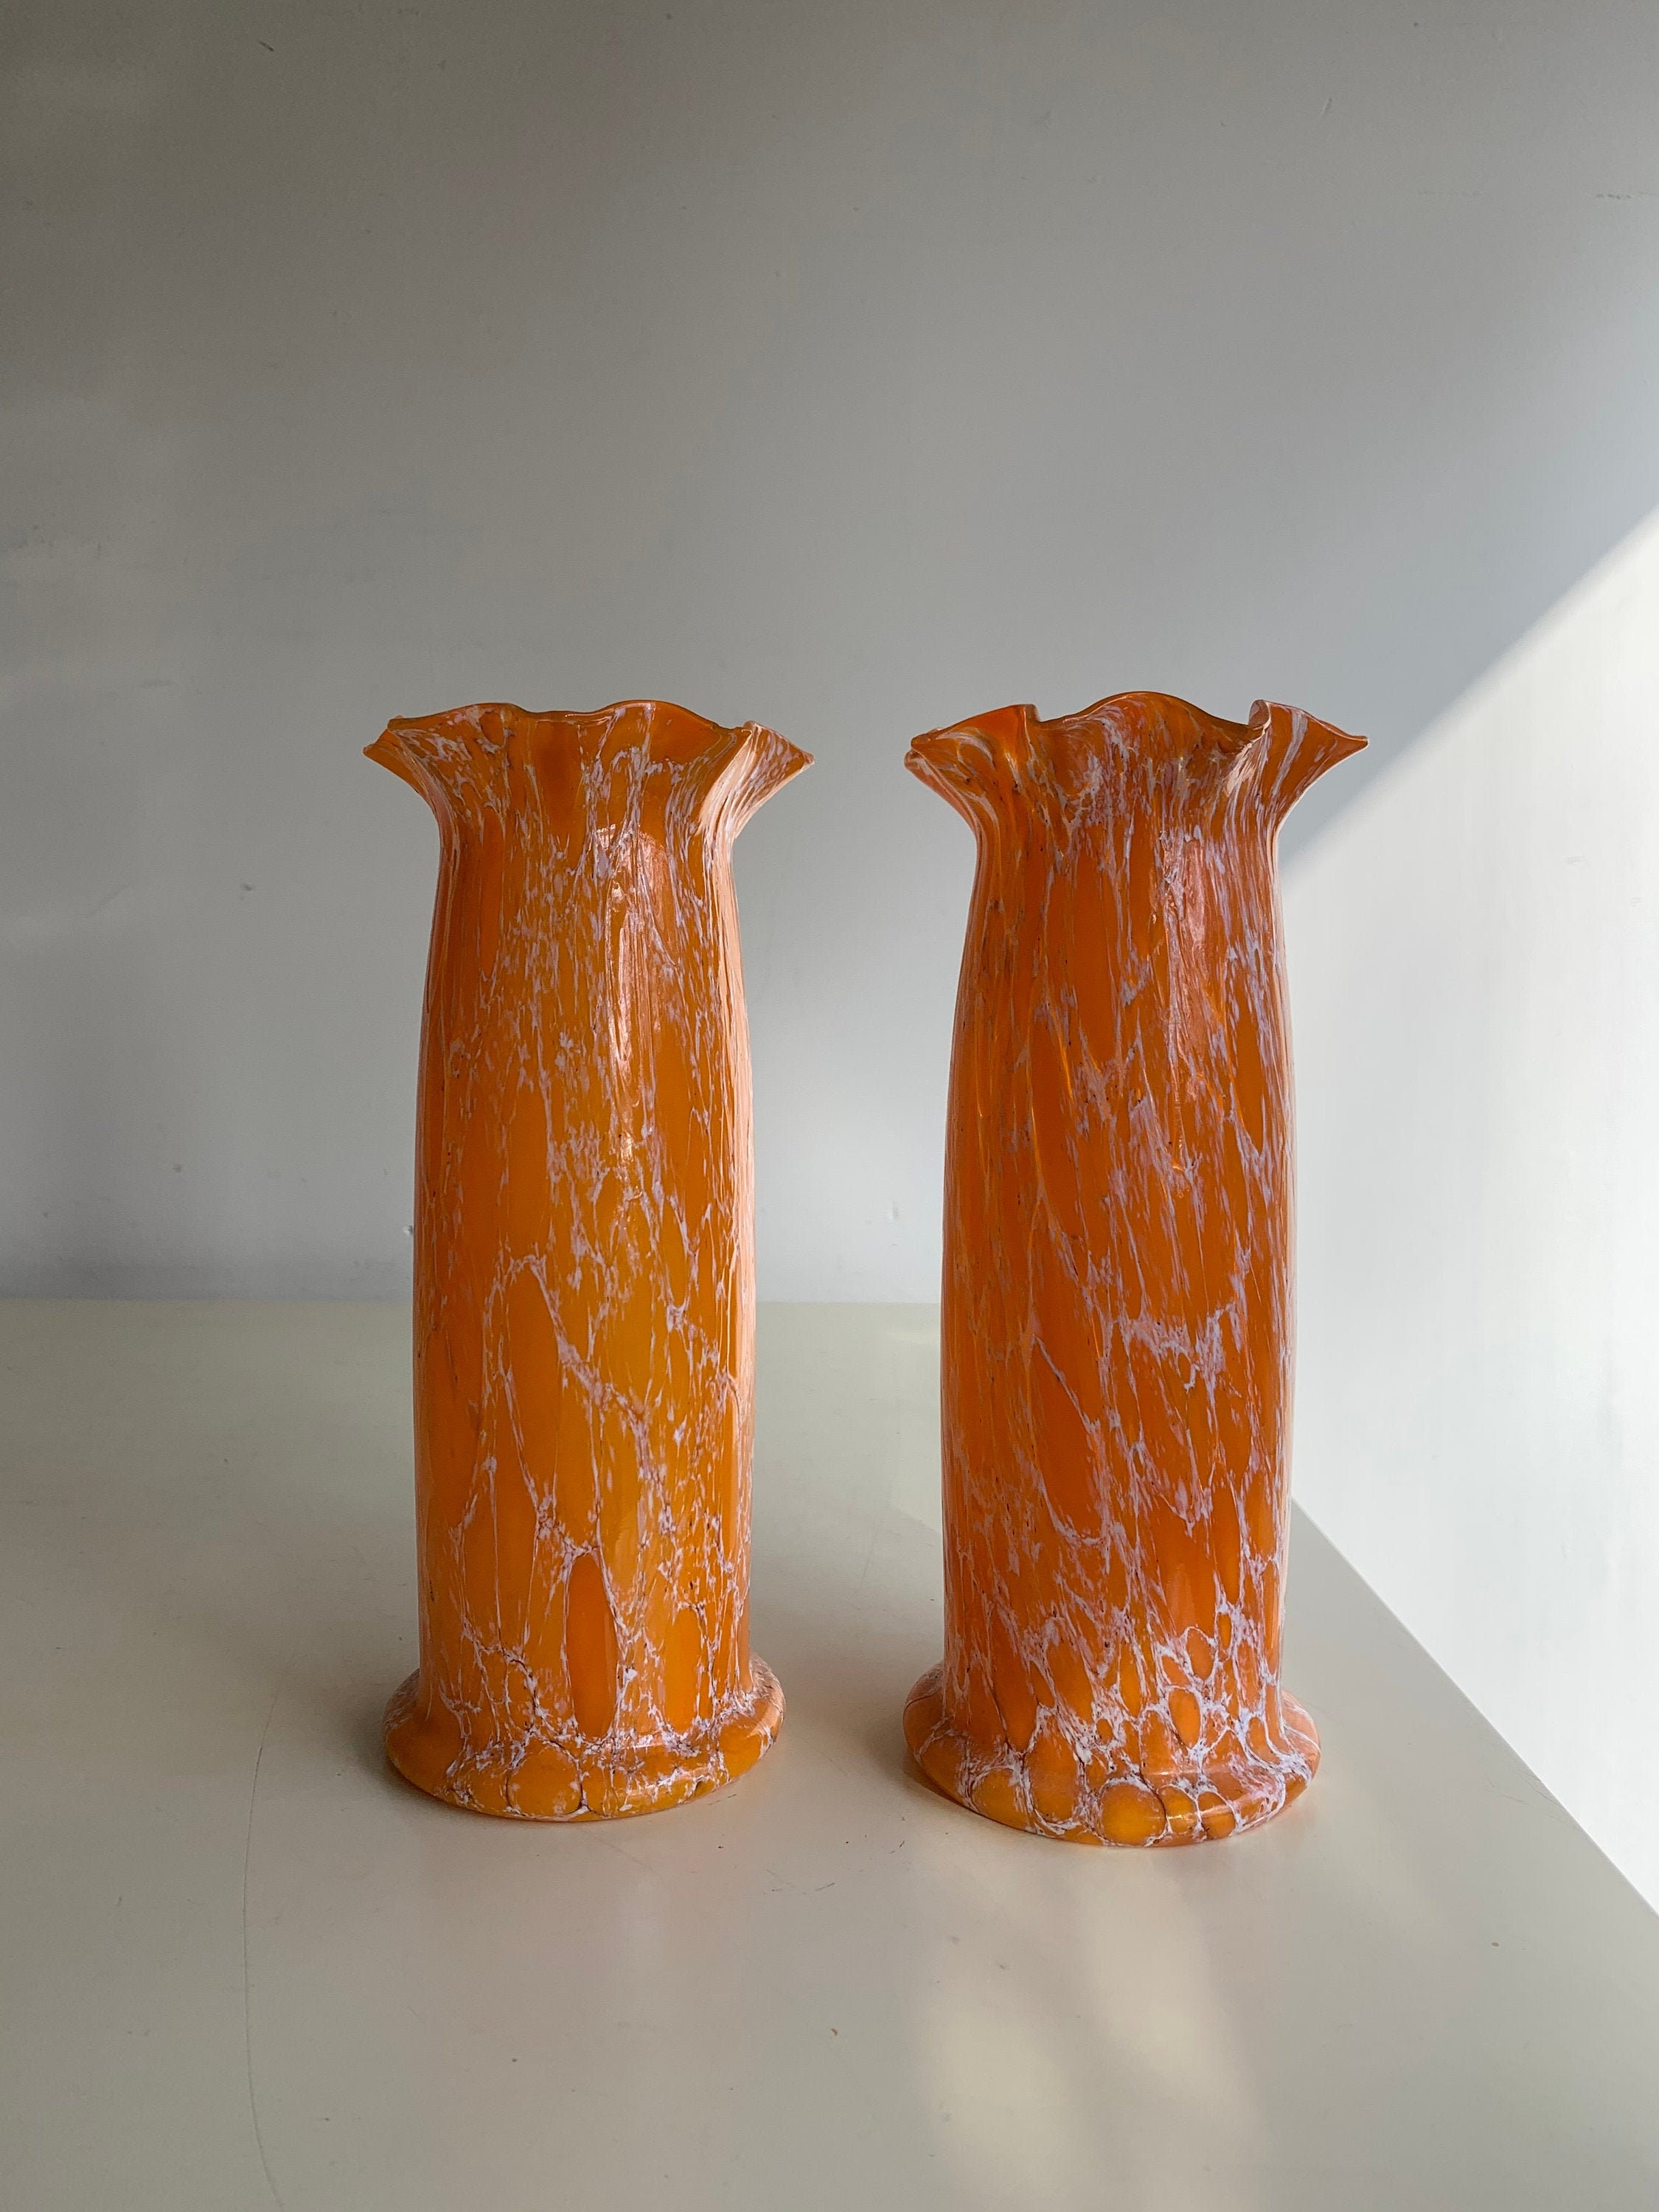 Voorwaardelijk Helaas Kan worden berekend Jugendstil Glass Art Nouveau Vases Glazen Vazen Oranje Swirl - Etsy